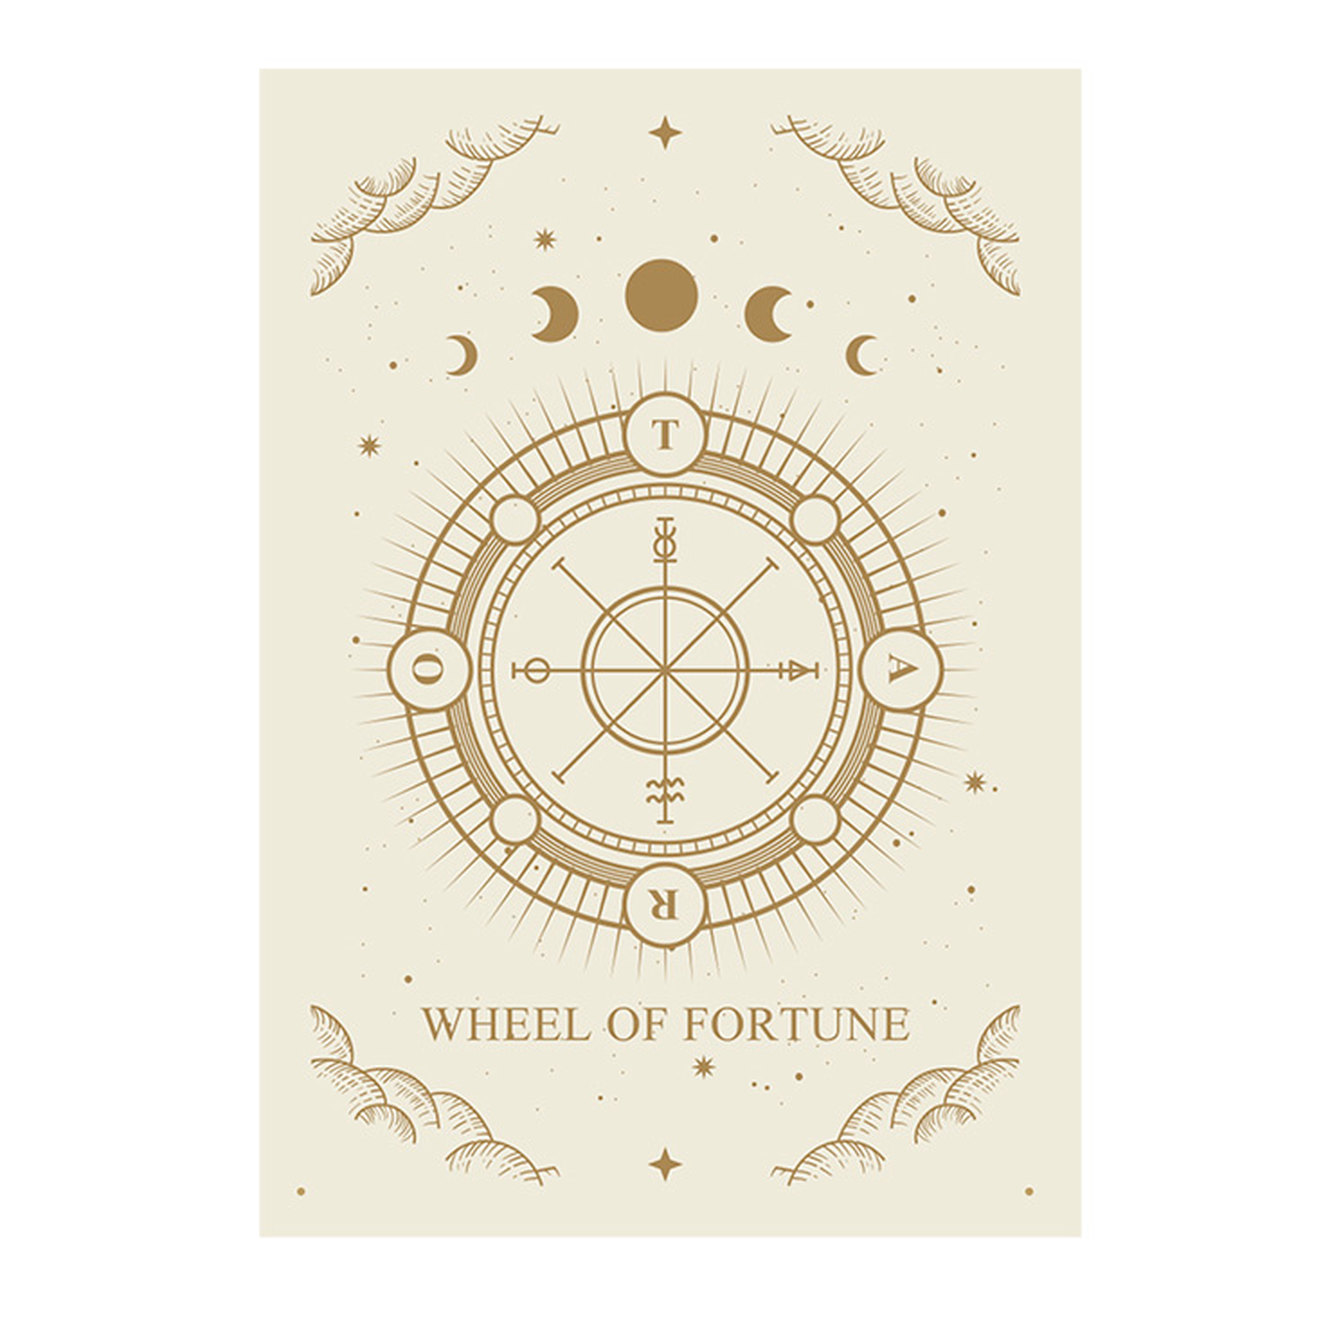 Wheel of Fortune kertu ngandika, "Apa sampeyan ora pracaya apa bisa?" Saiki sampeyan bakal ngerti!